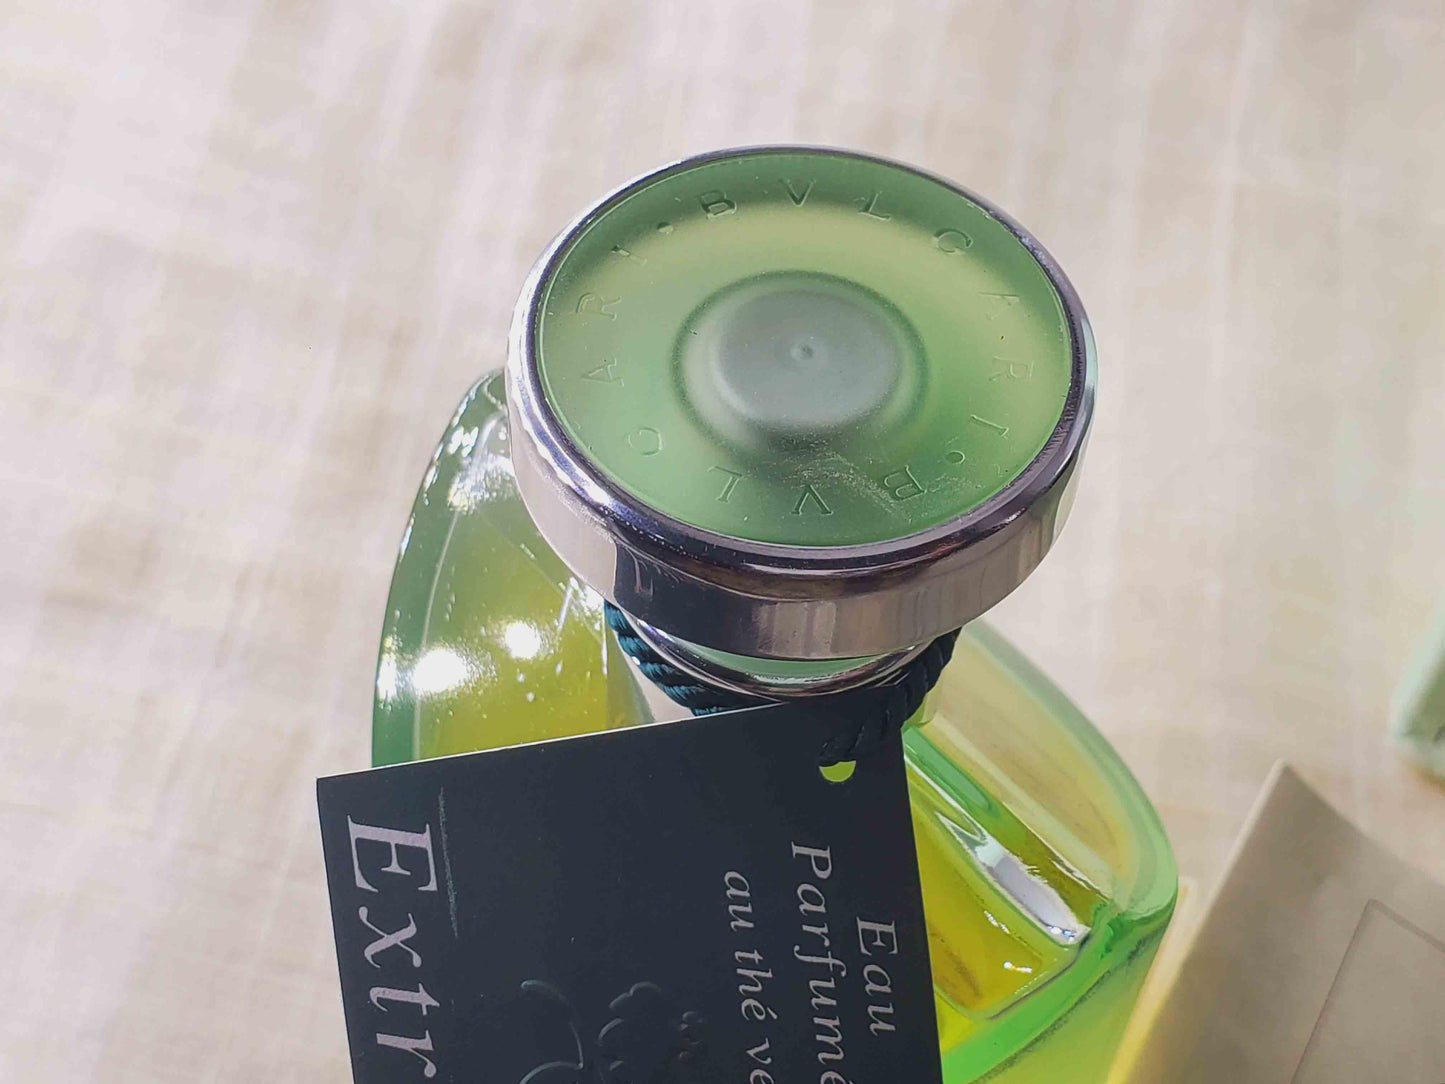 Bvlgari Eau Parfumee Au The Vert Extreme EDT Spray 100 ml 3.4 oz Or 50 ml 1.7 oz, Vintage, Rare